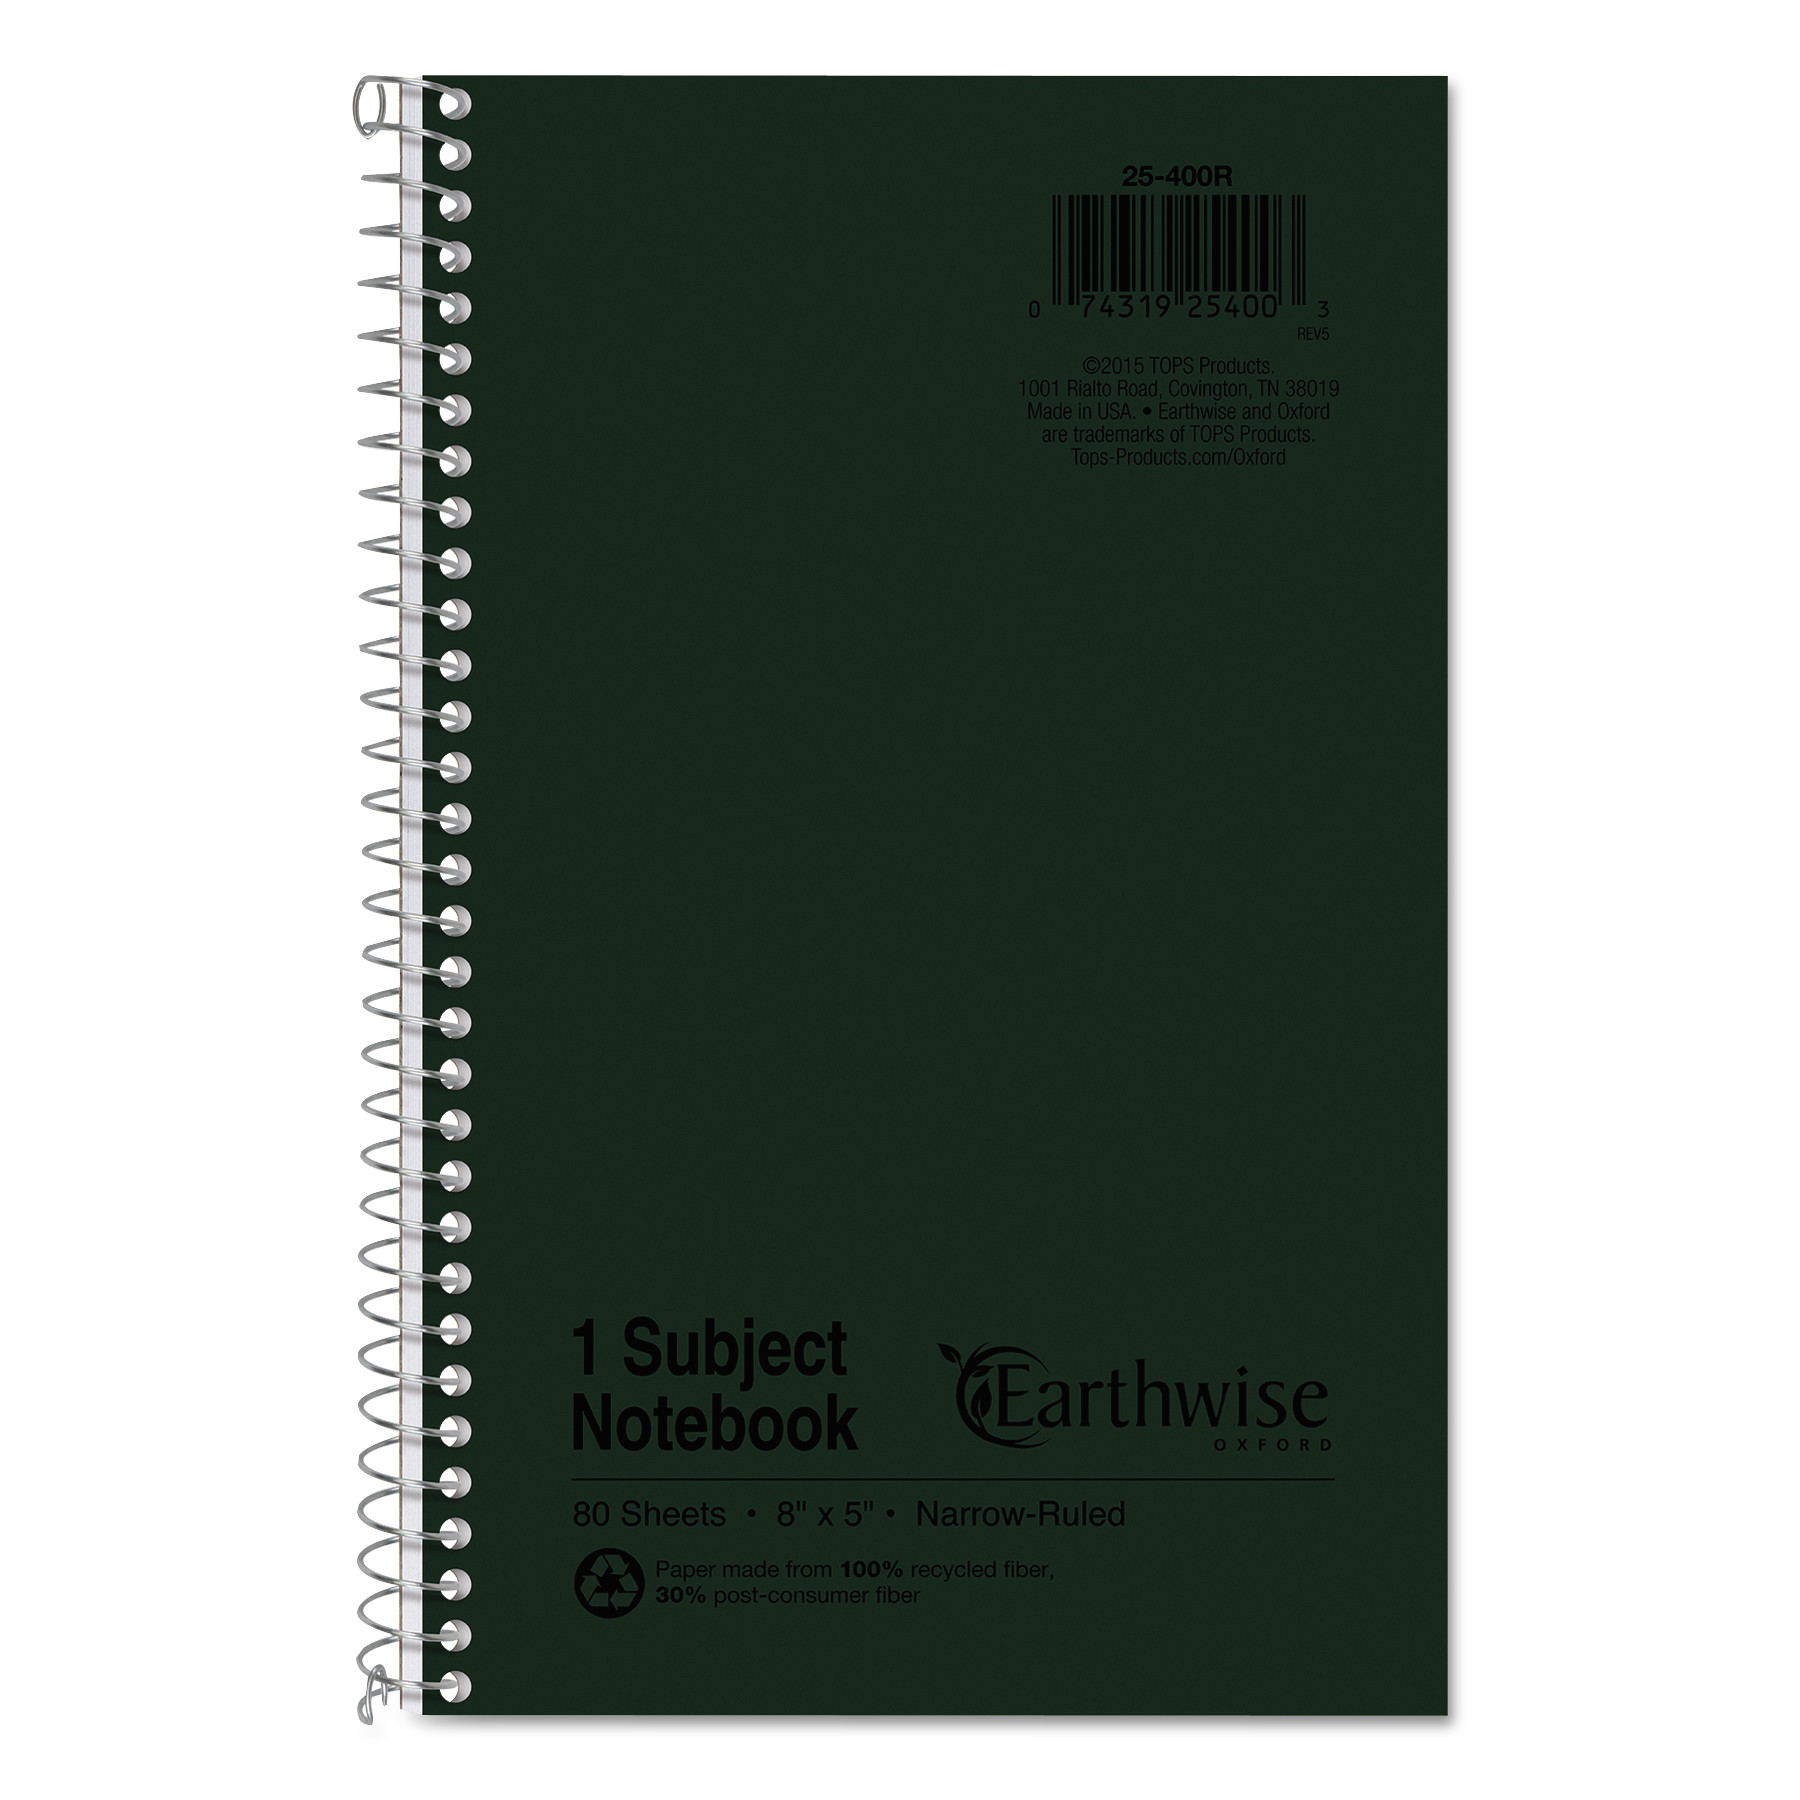 Spiral Bound Notebook, Office Green